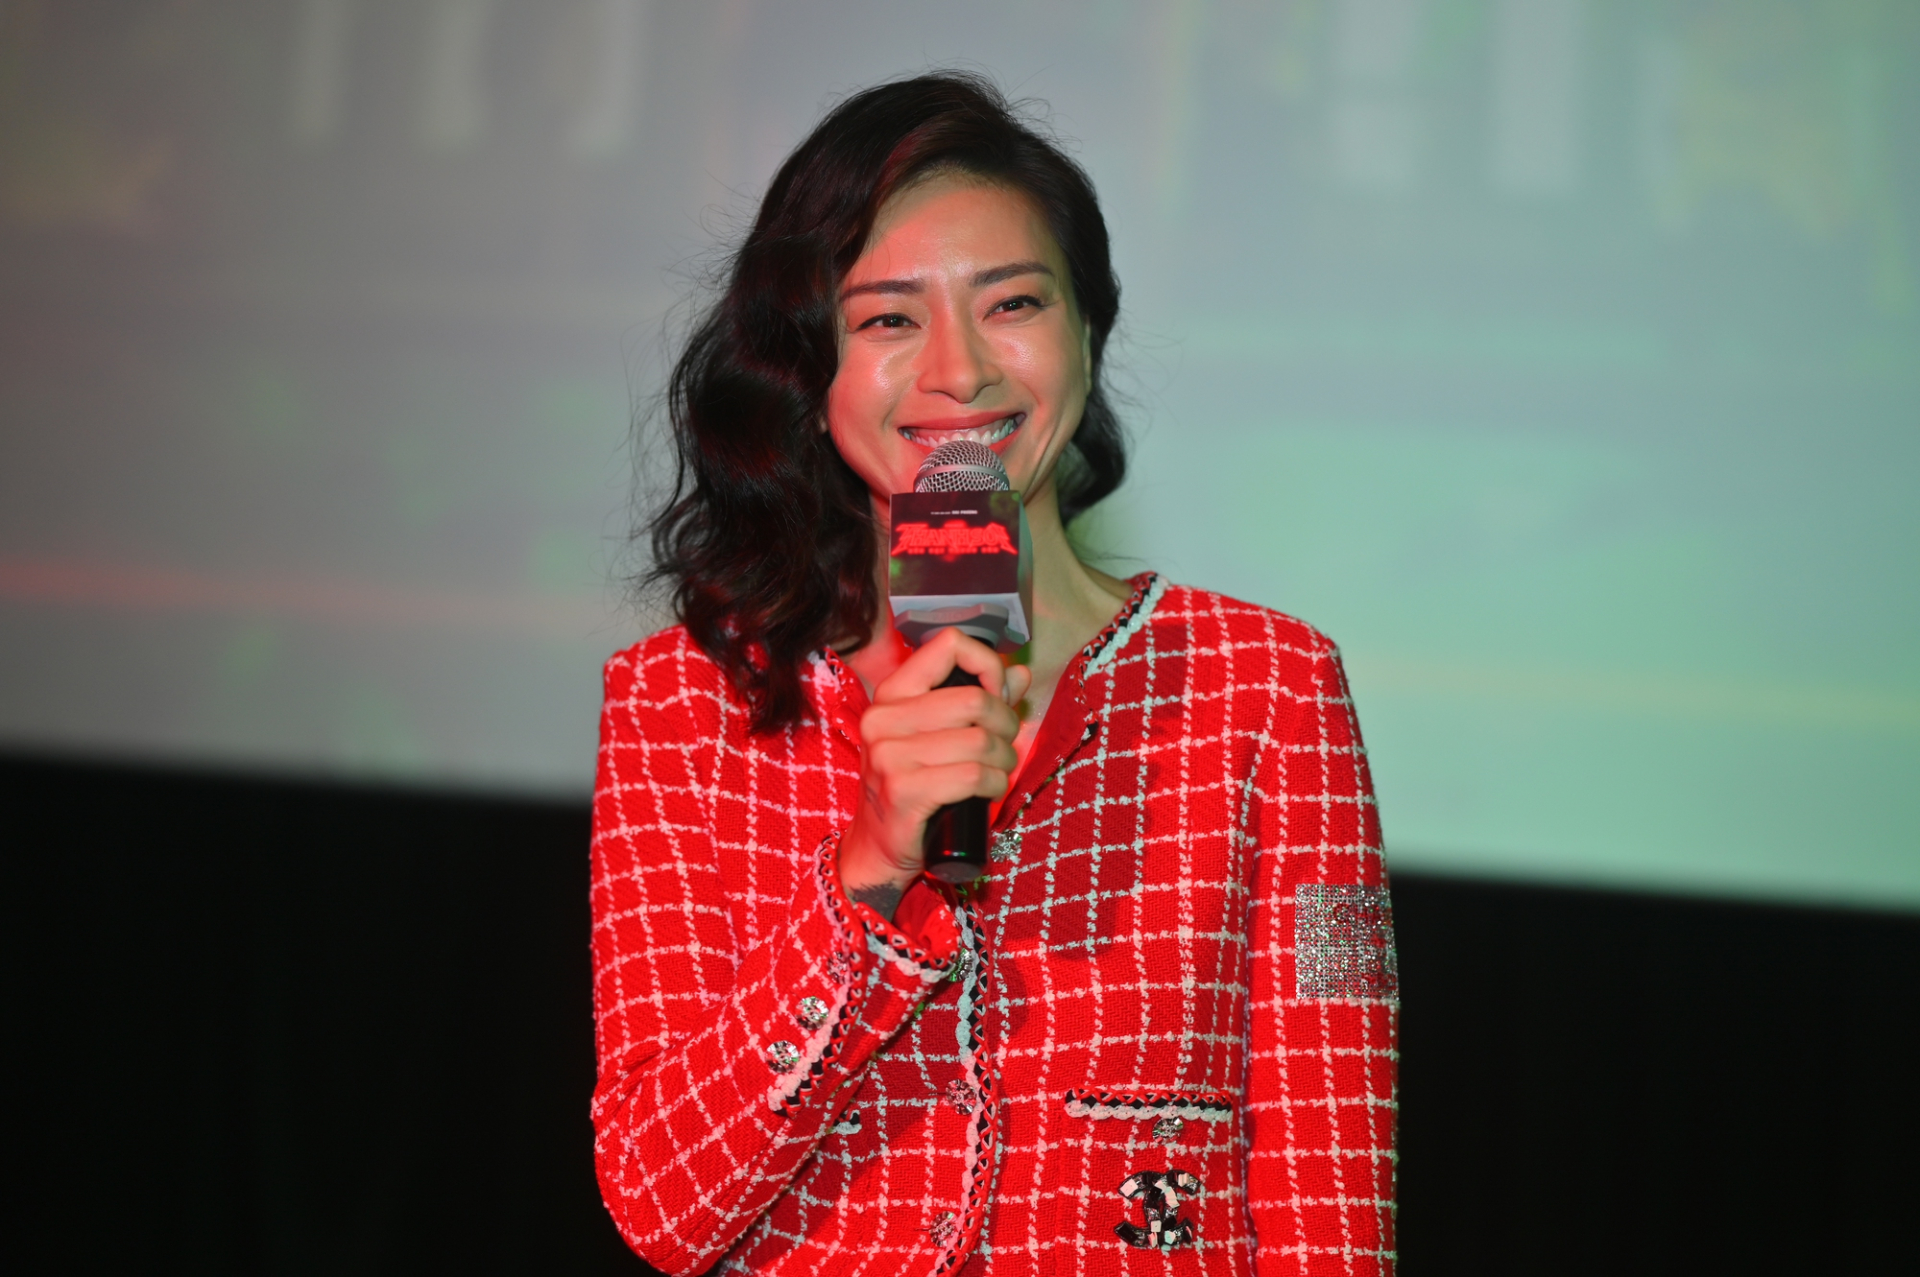 Trấn Thành khen ngợi phim 'Thanh Sói' hết lời, thấy buồn cho Ngô Thanh Vân vì doanh thu thấp - ảnh 3